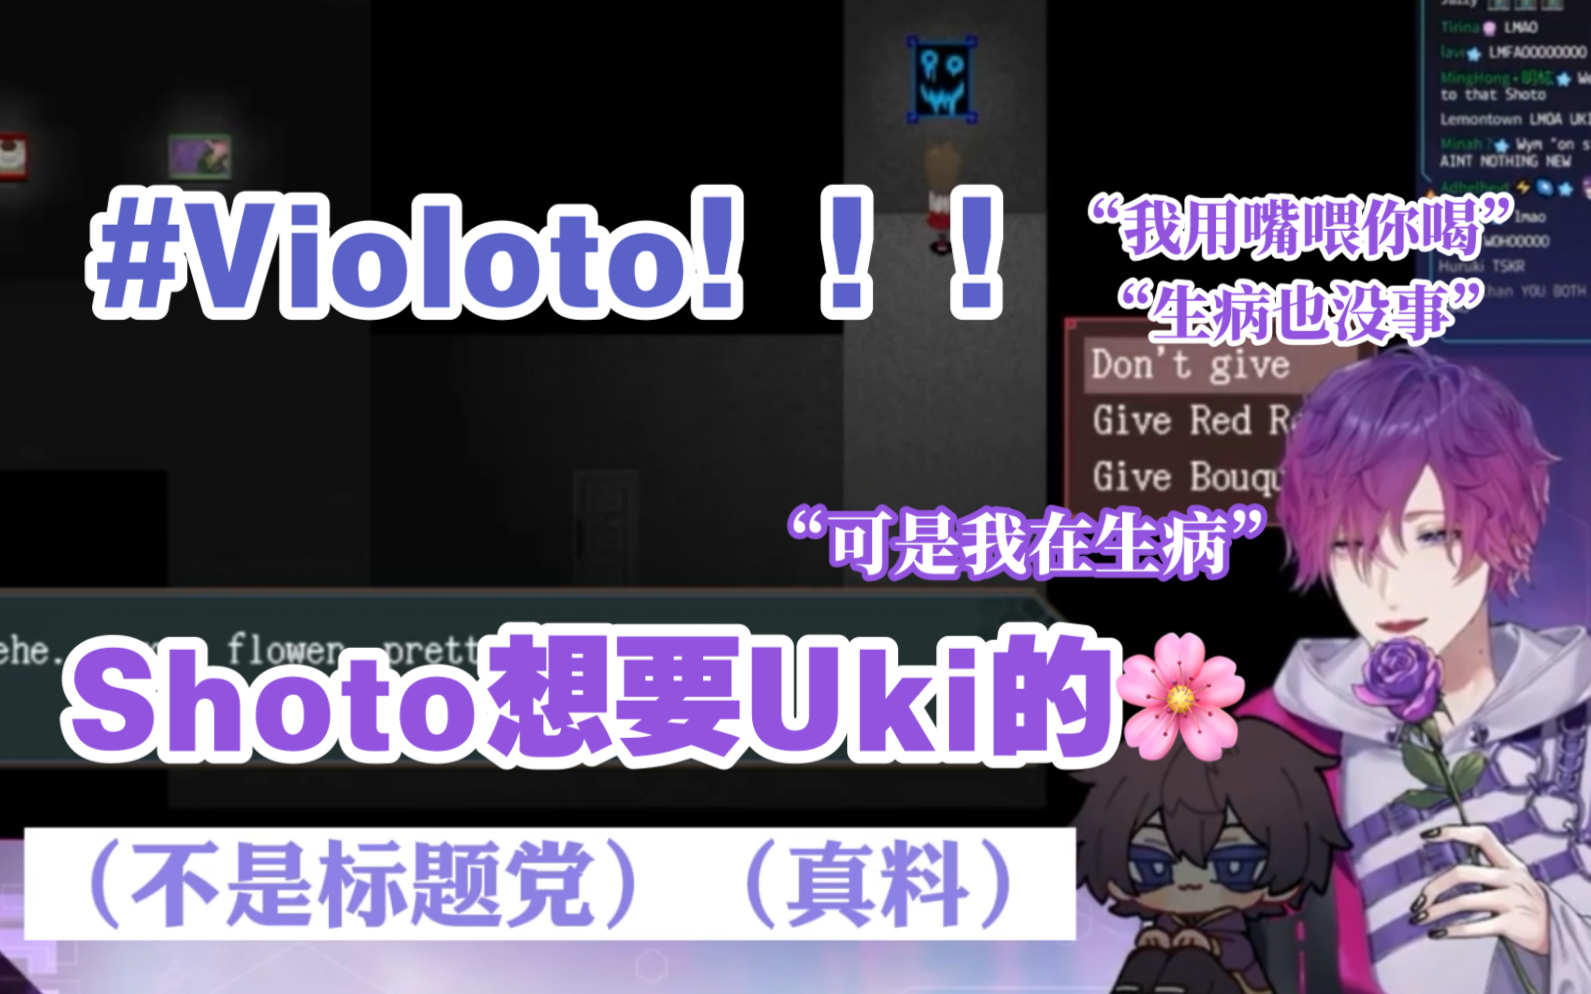 【熟/Uki Shoto】Violoto 很好…/高手过招 招招高/谢吴老师的标题^